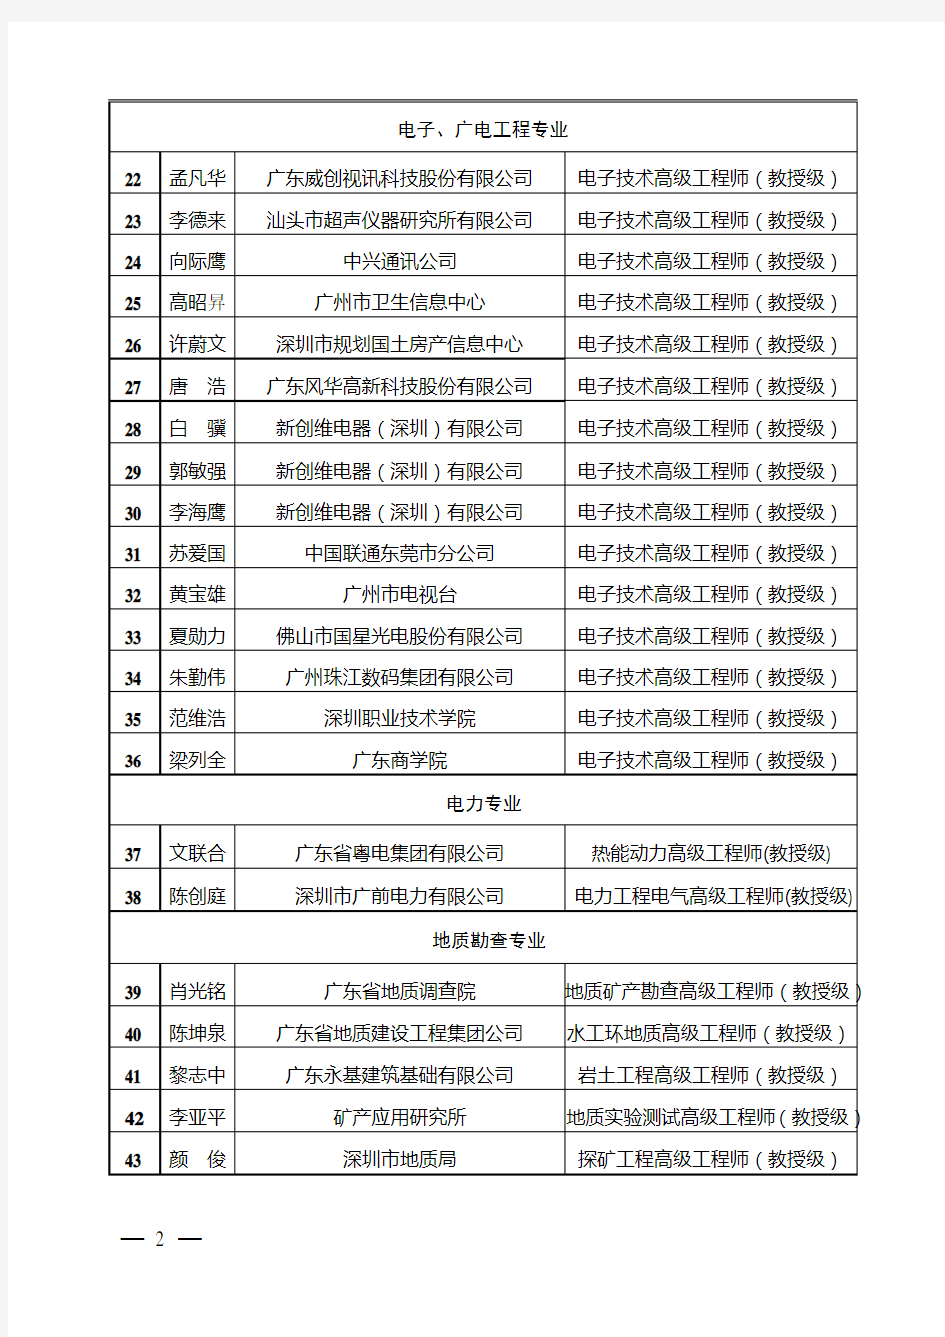 2011年度广东省高级工程师(教授级)评委会评审通过人员网上公示名单